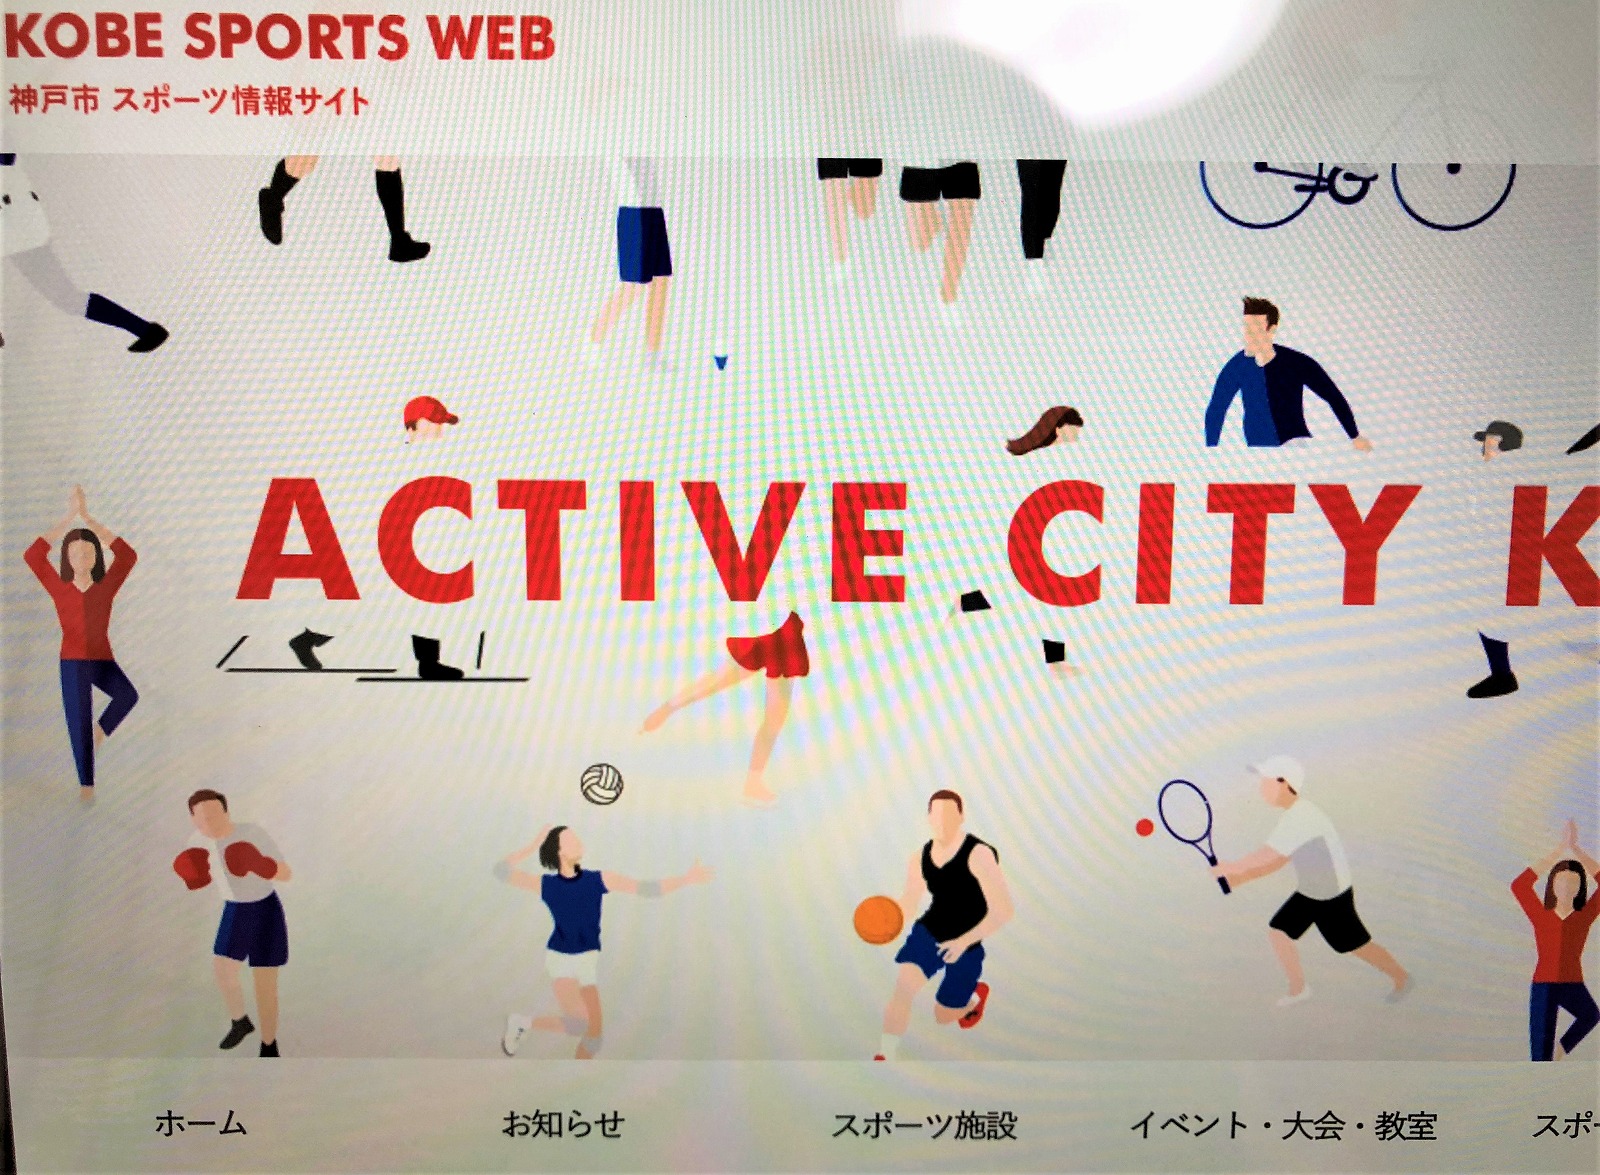 神戸市スポーツ情報サイト Kobe Sports Web が9月6日から公開開始 スポーツイベントやスポーツ施設情報がより分かりやすくなったよ 神戸市スポーツ情報サイト 神戸市 スポーツイベント 東灘ジャーナル